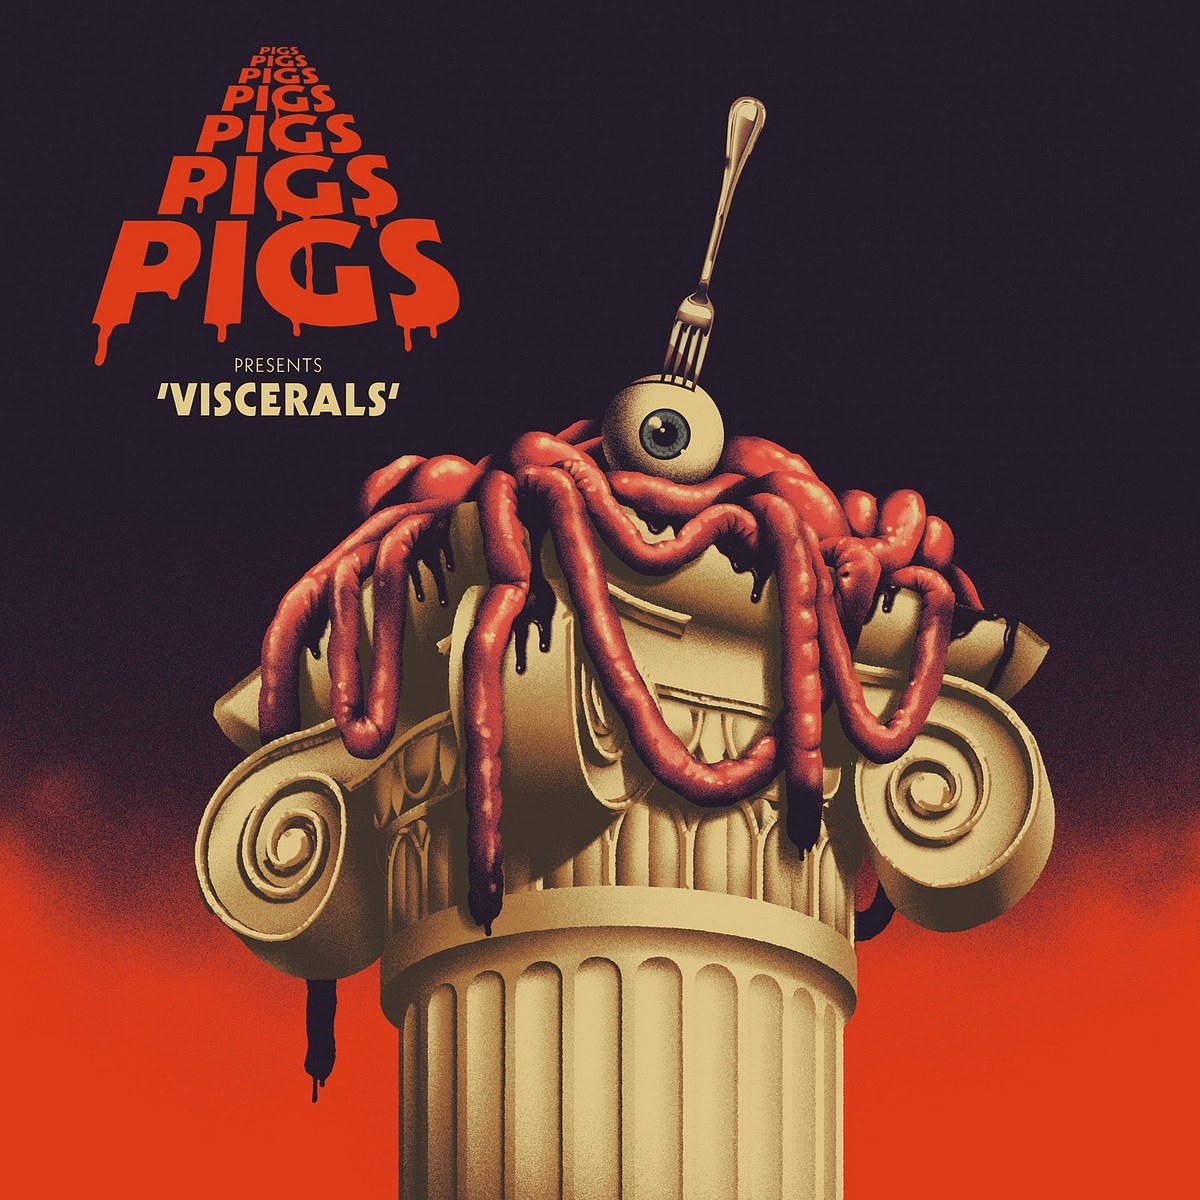 Pigs Pigs Pigs Pigs Pigs Pigs Pigs – Viscerals (2020) [FLAC 24bit/44,1kHz]